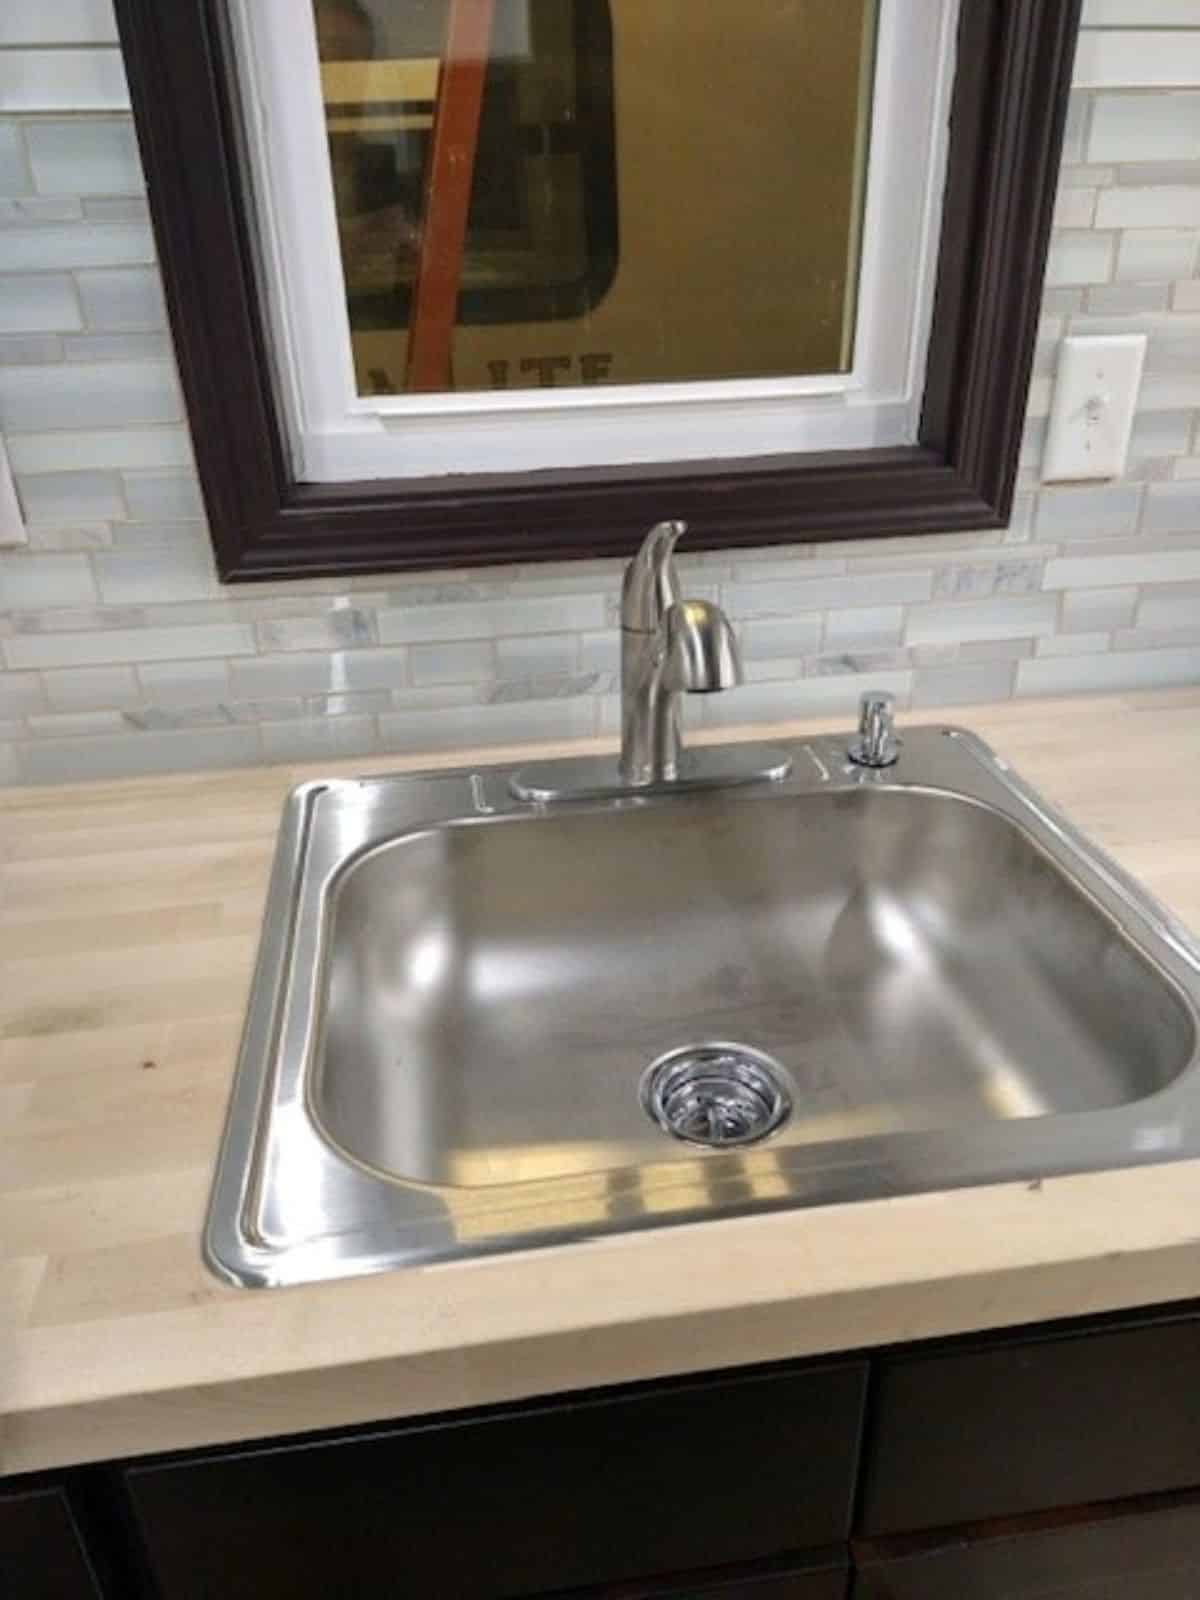 Stainless steel sink in bathroom